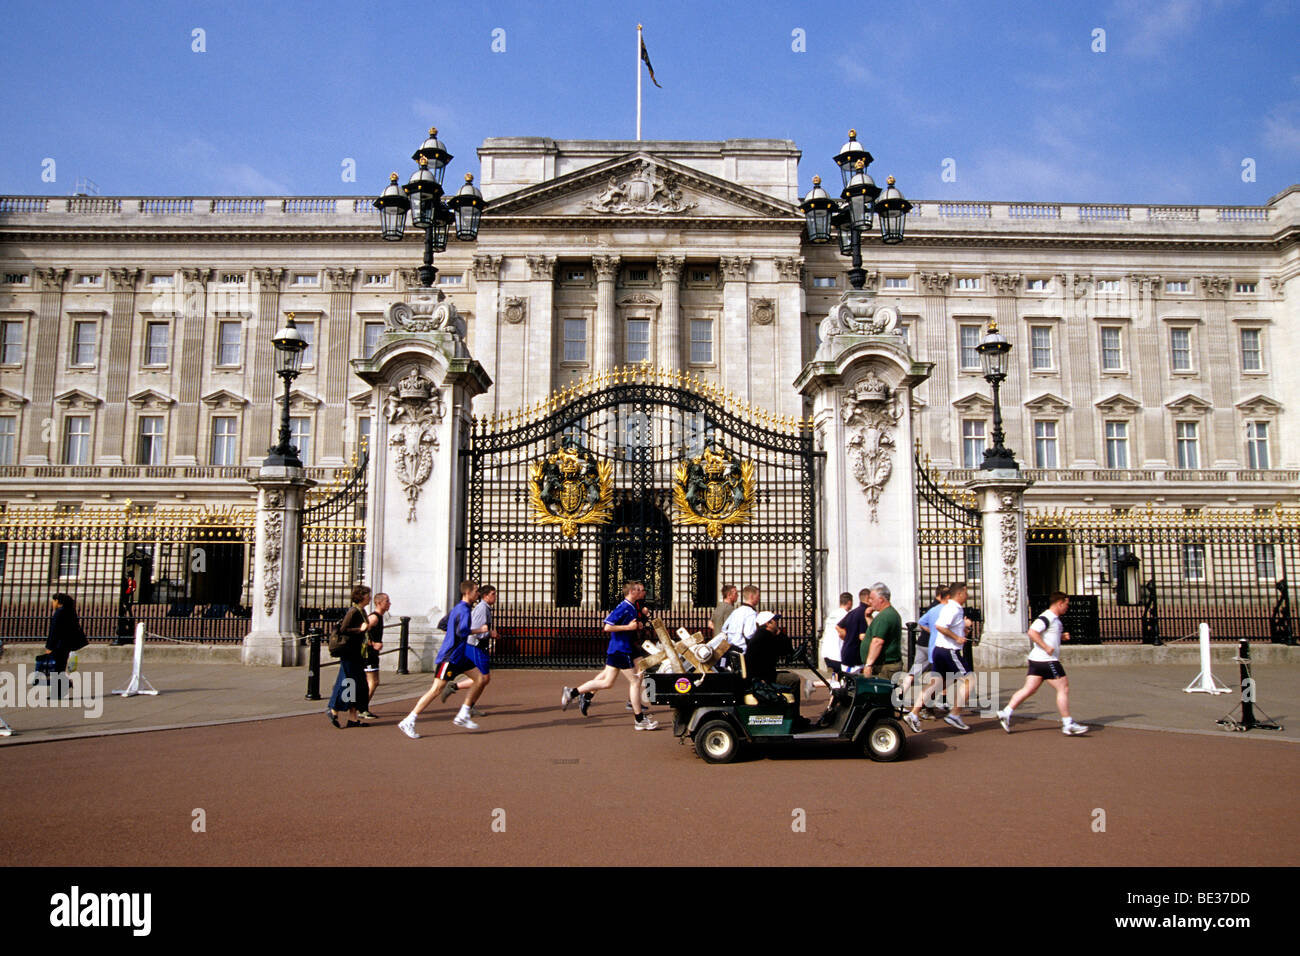 Royal Palace, Buckingham Palace, joggers passing the main gate, London, England, UK, Europe Stock Photo